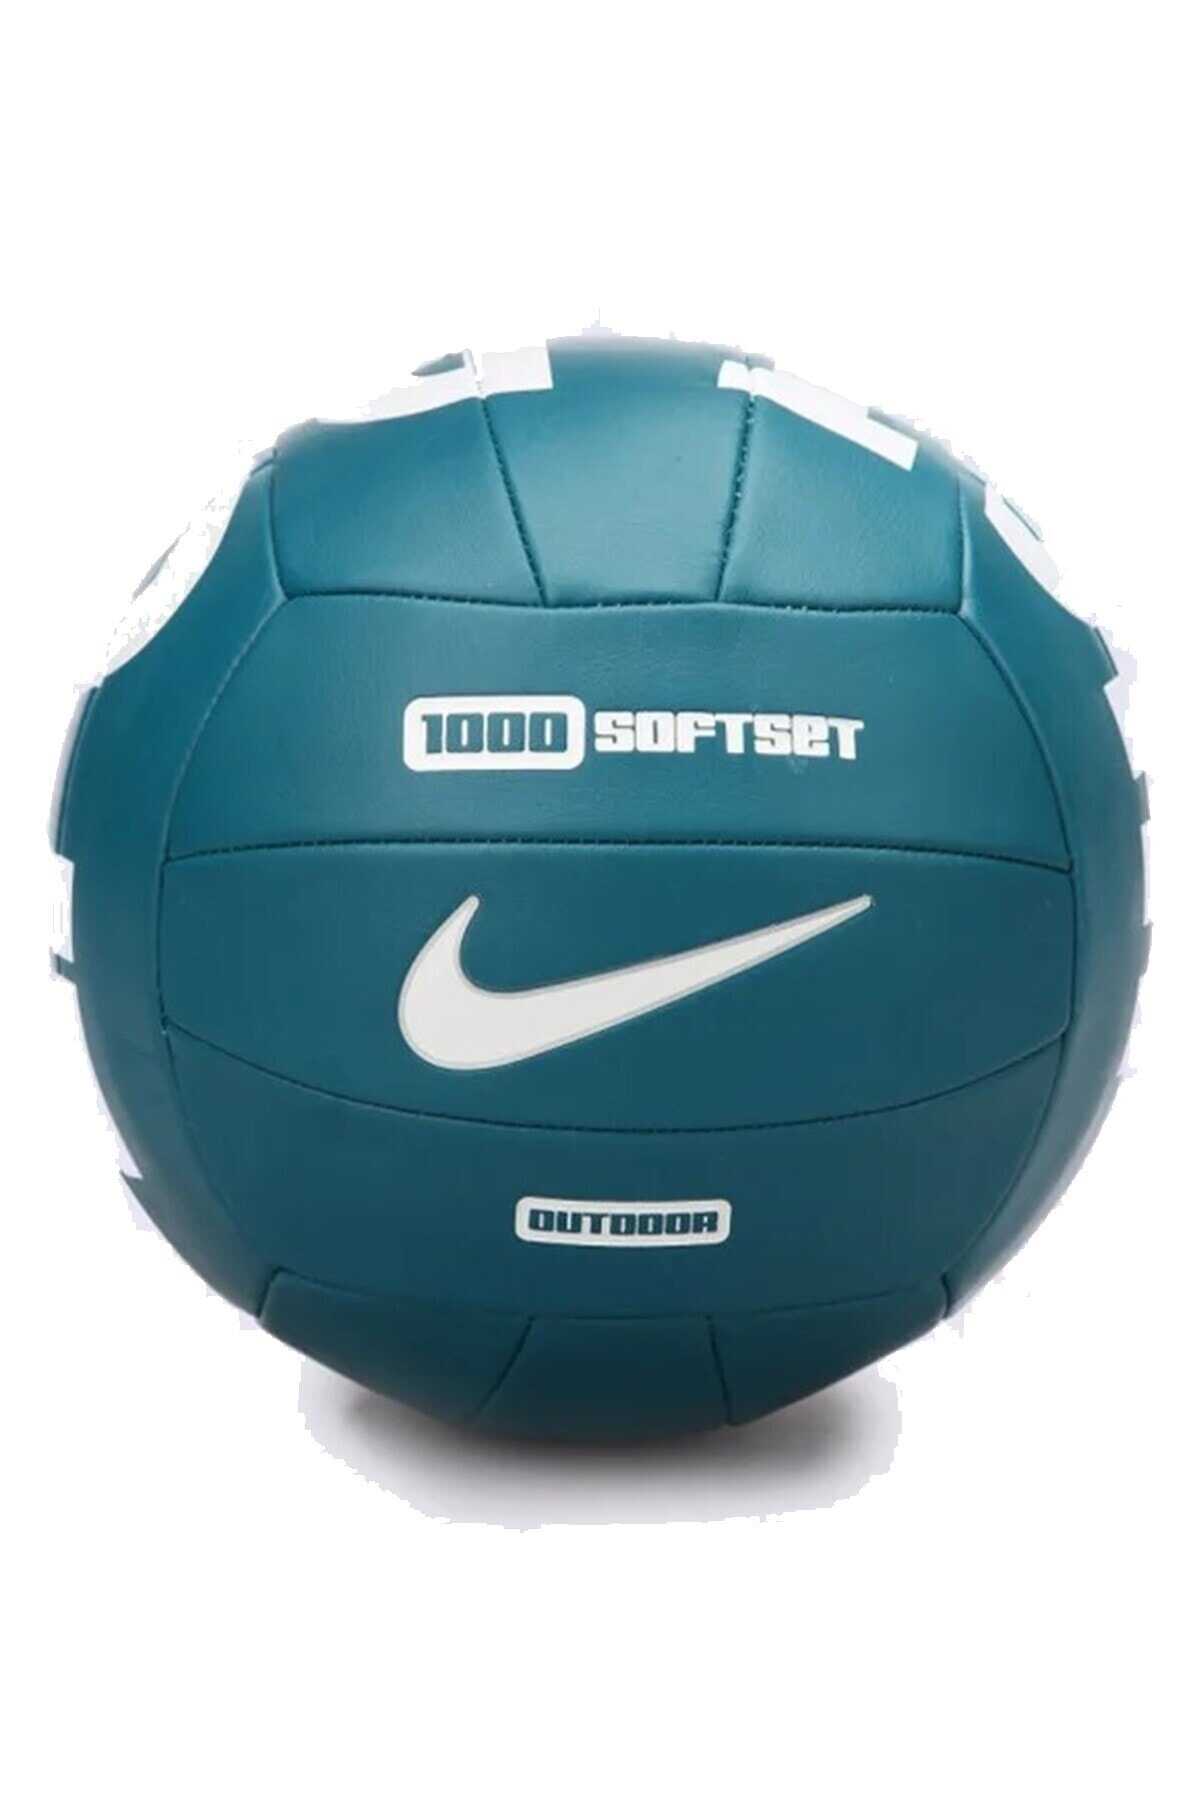 توپ والیبال مدل 1000 Softset فیروزه ای تیره برند Nike